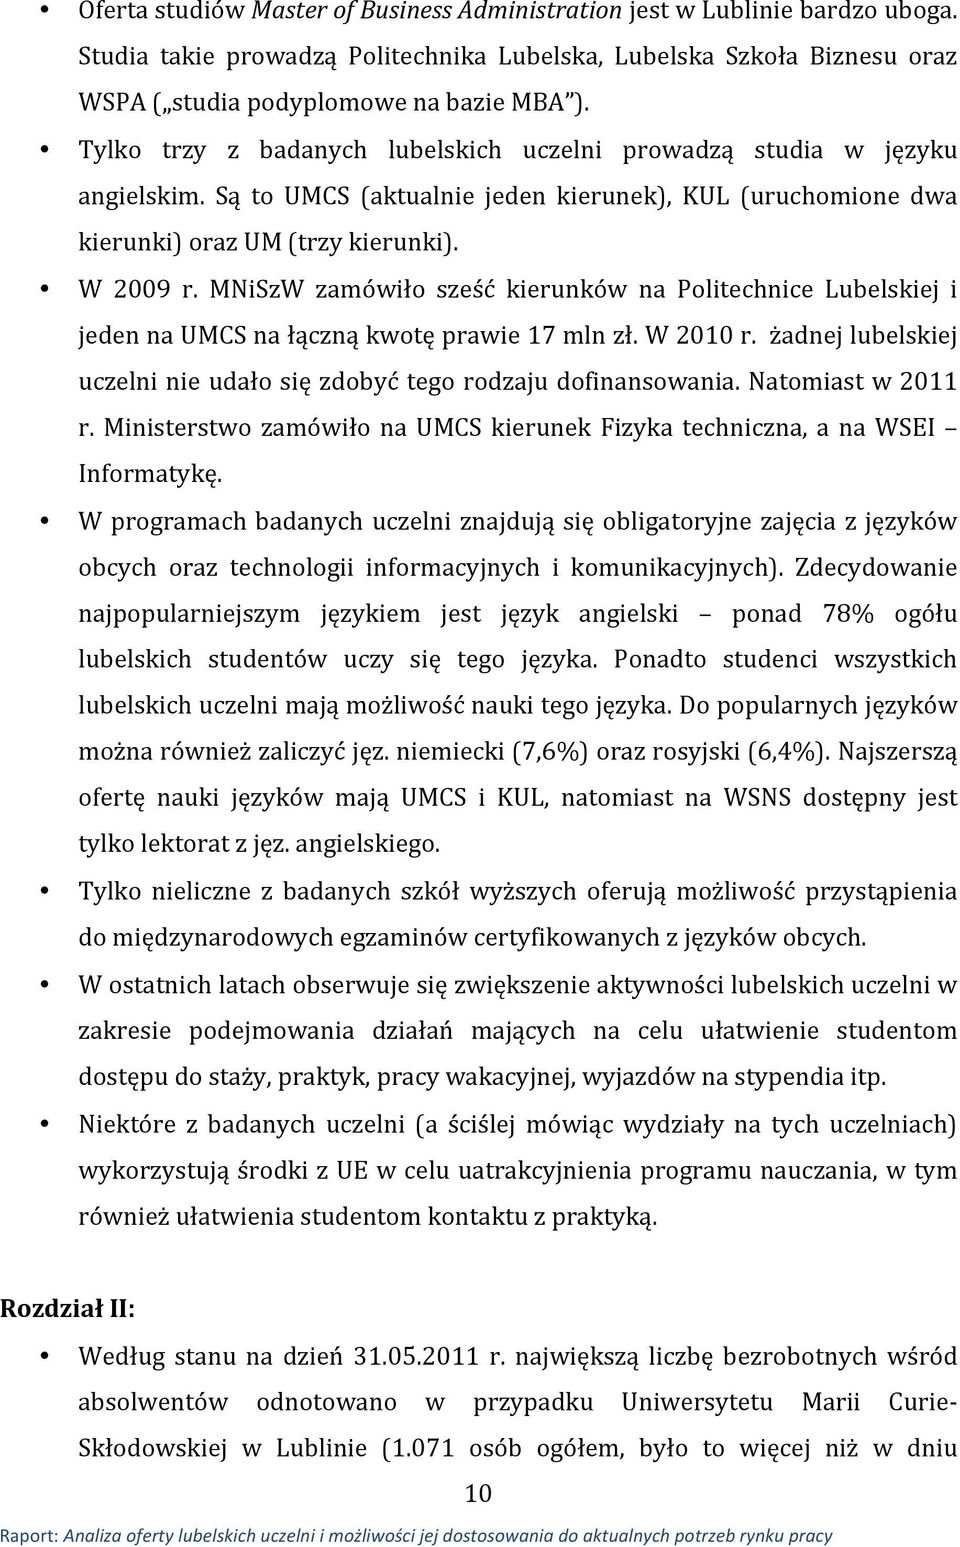 MNiSzW zamówiło sześć kierunków na Politechnice Lubelskiej i jeden na UMCS na łączną kwotę prawie 17 mln zł. W 2010 r. żadnej lubelskiej uczelni nie udało się zdobyć tego rodzaju dofinansowania.